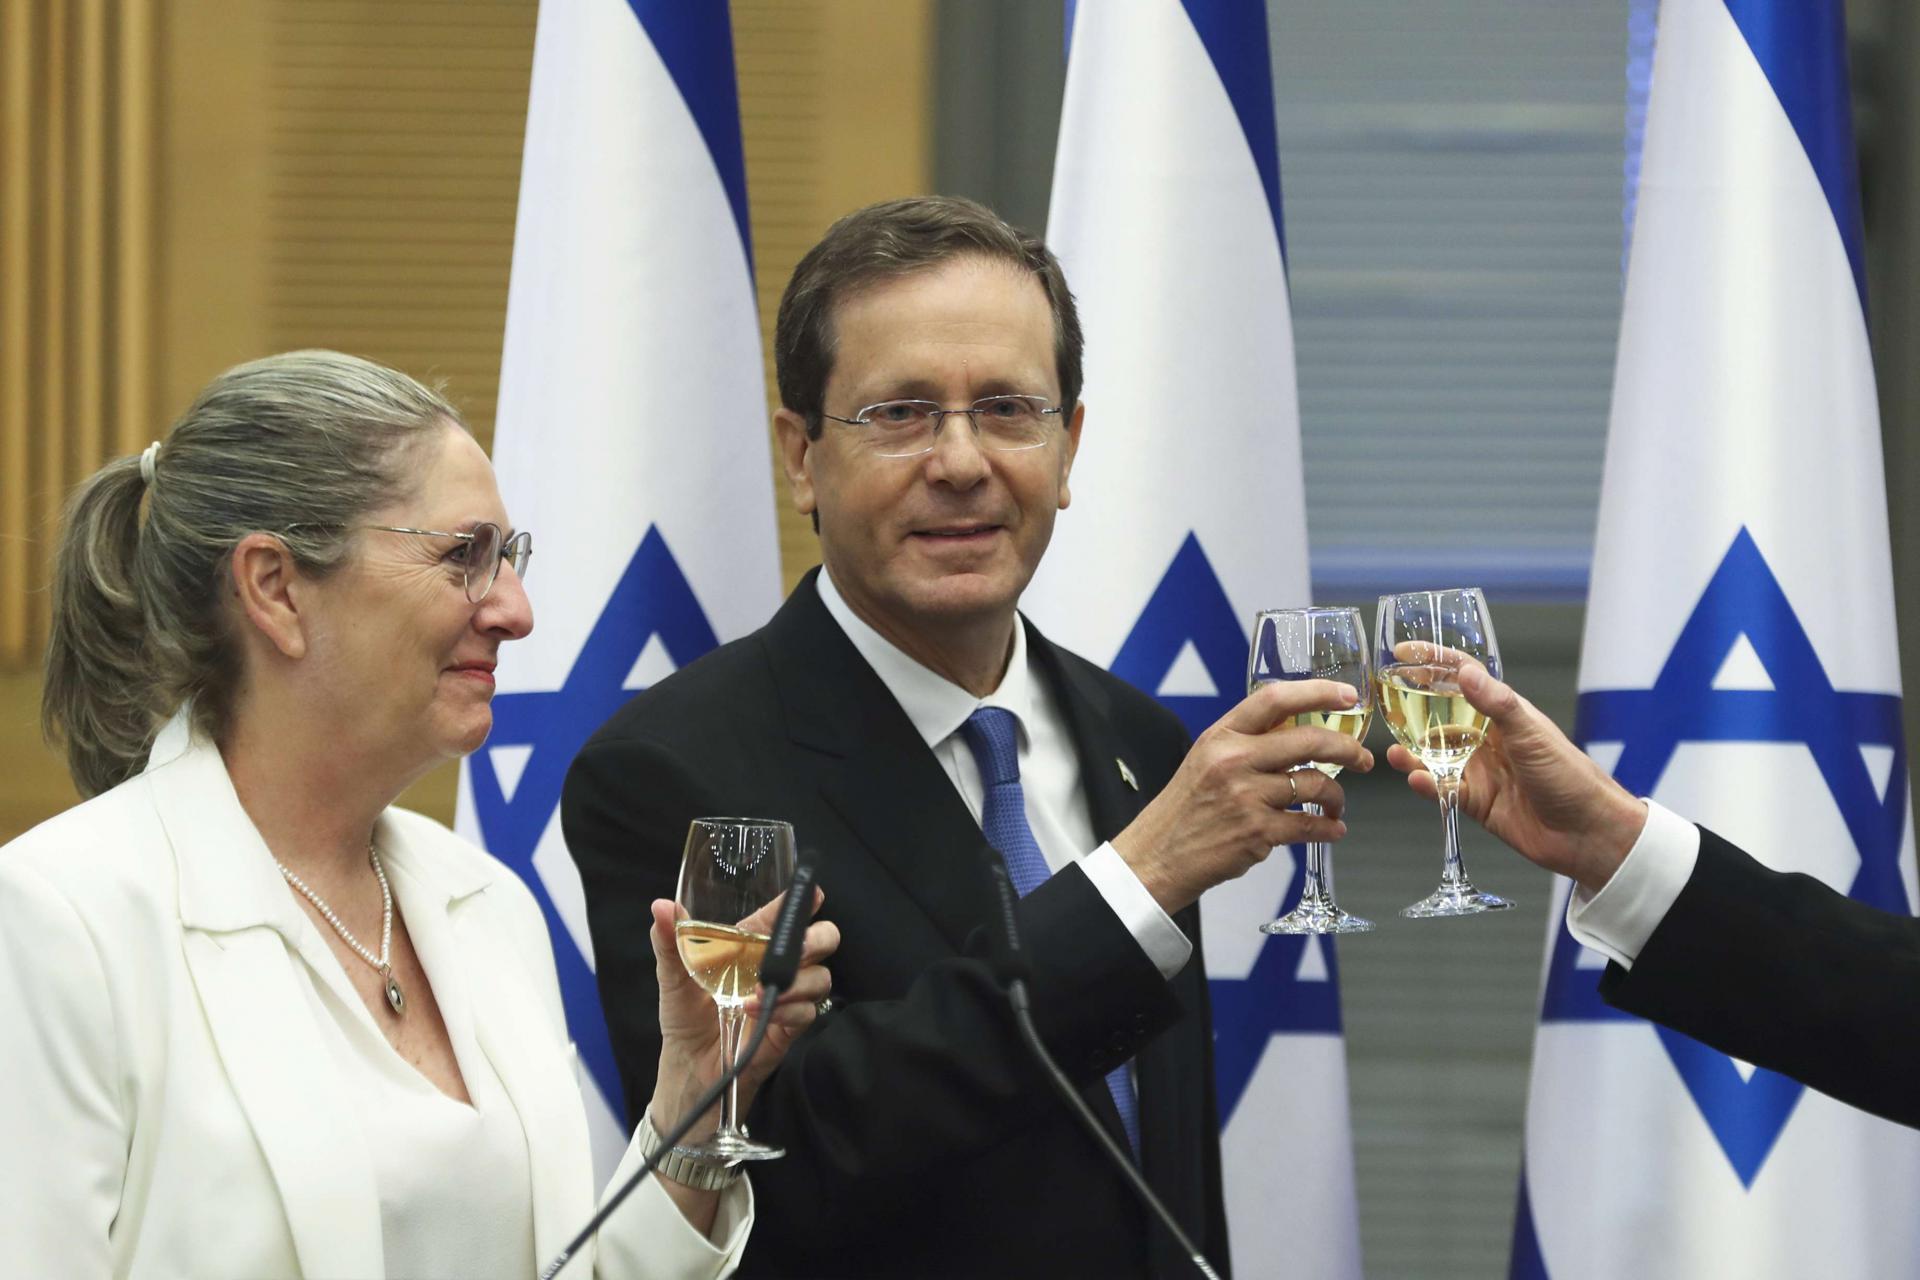 الرئيس الإسرائيلي الجديد إسحق هرتسوغ وزوجته يحتفلان بعد انتخابه من قبل الكنيست